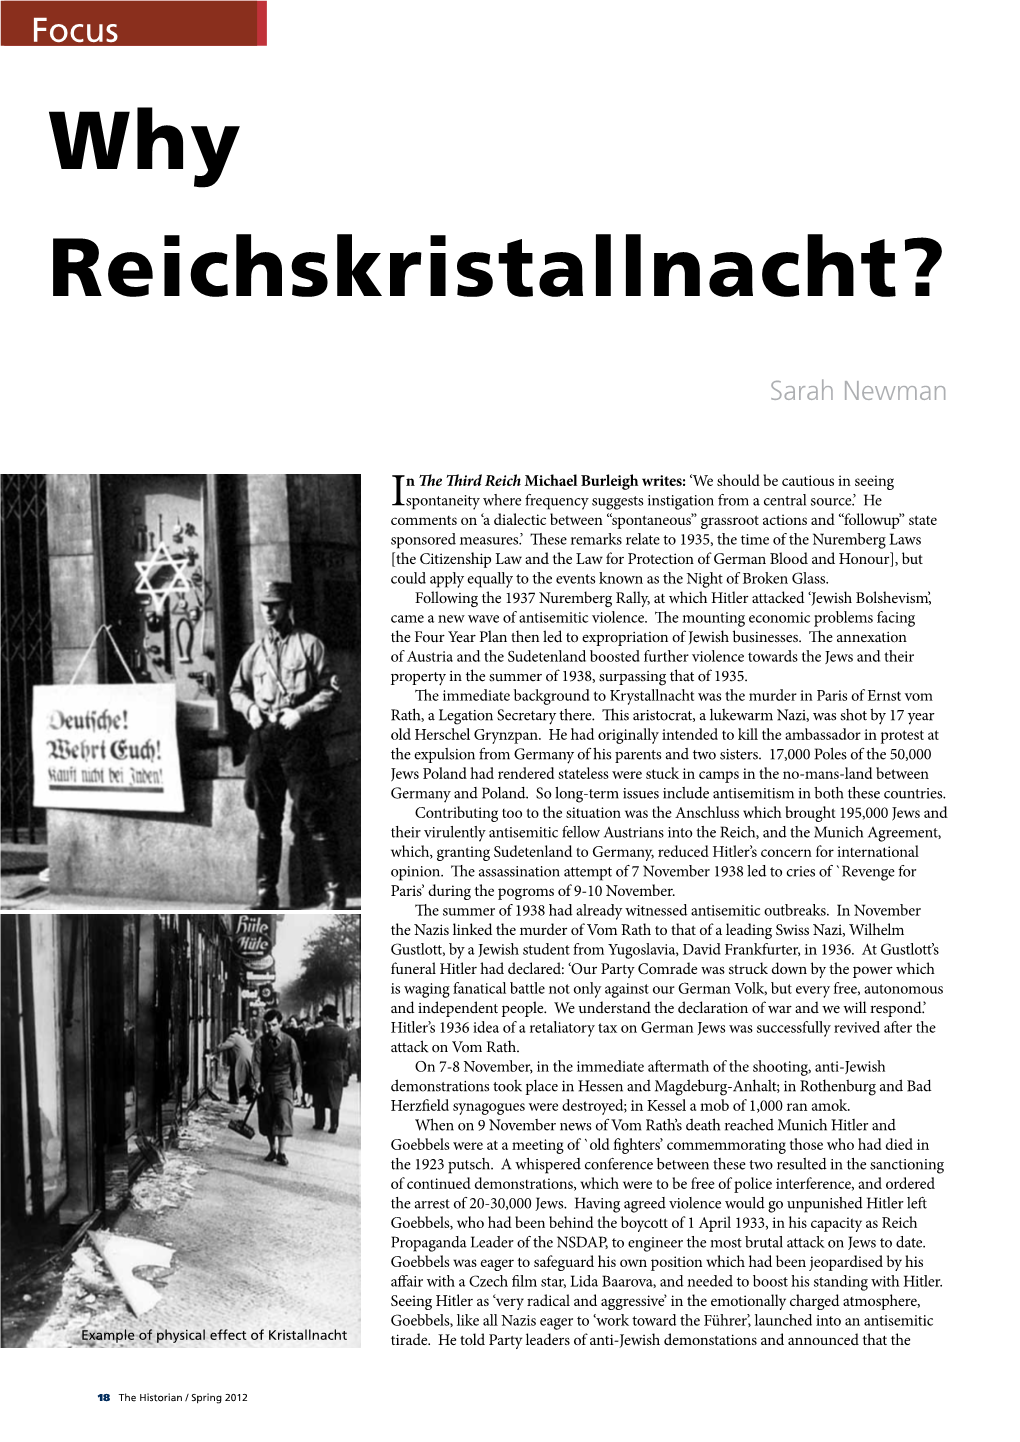 Why Reichskristallnacht?